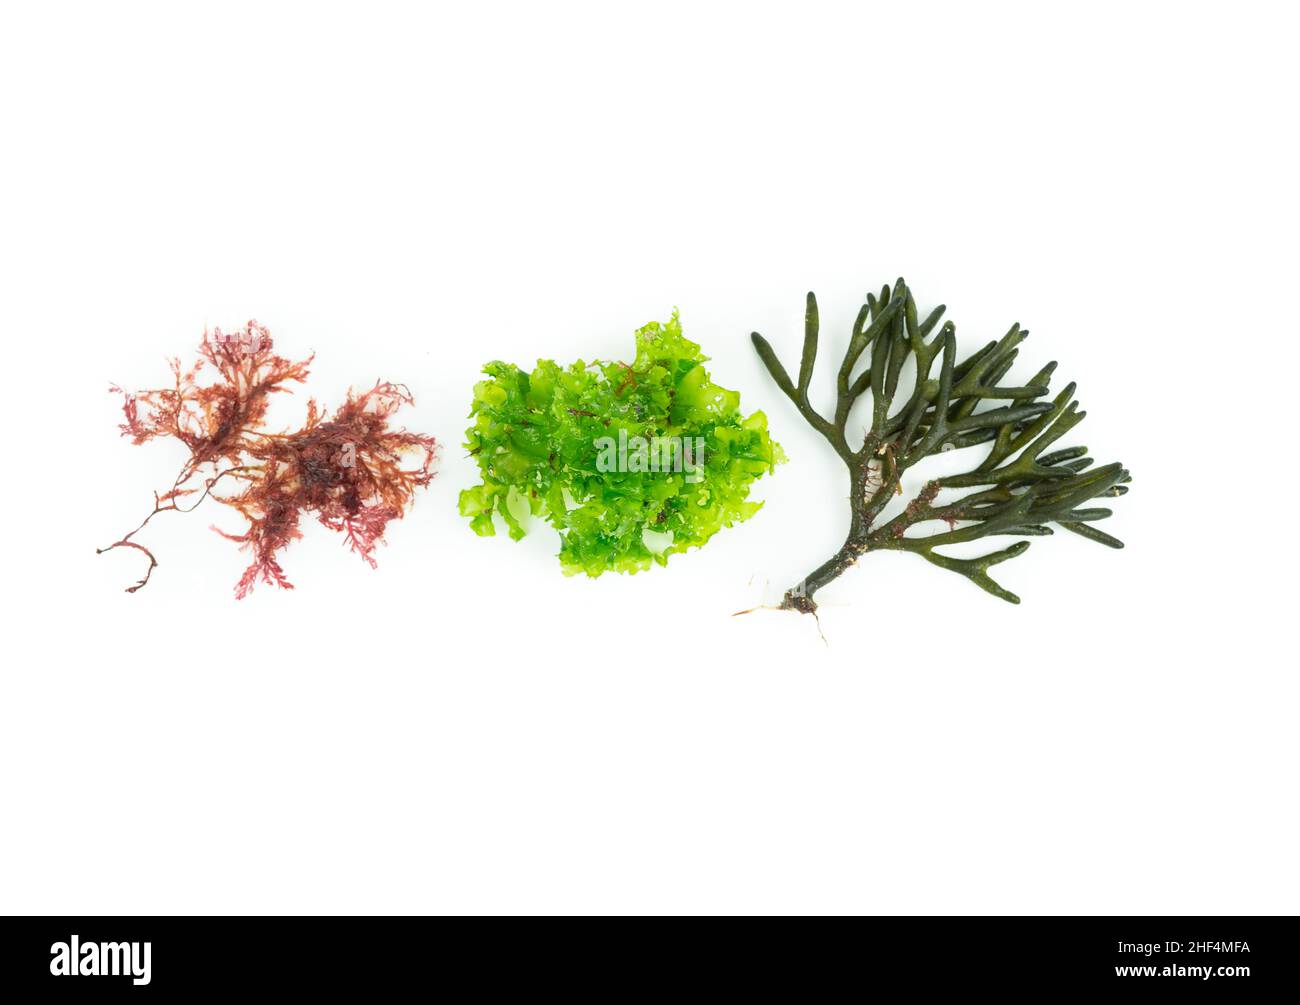 Three different species of algae on white background. Codium tomentosum, Gelidium, Ulva lactuca. Top view. Stock Photo